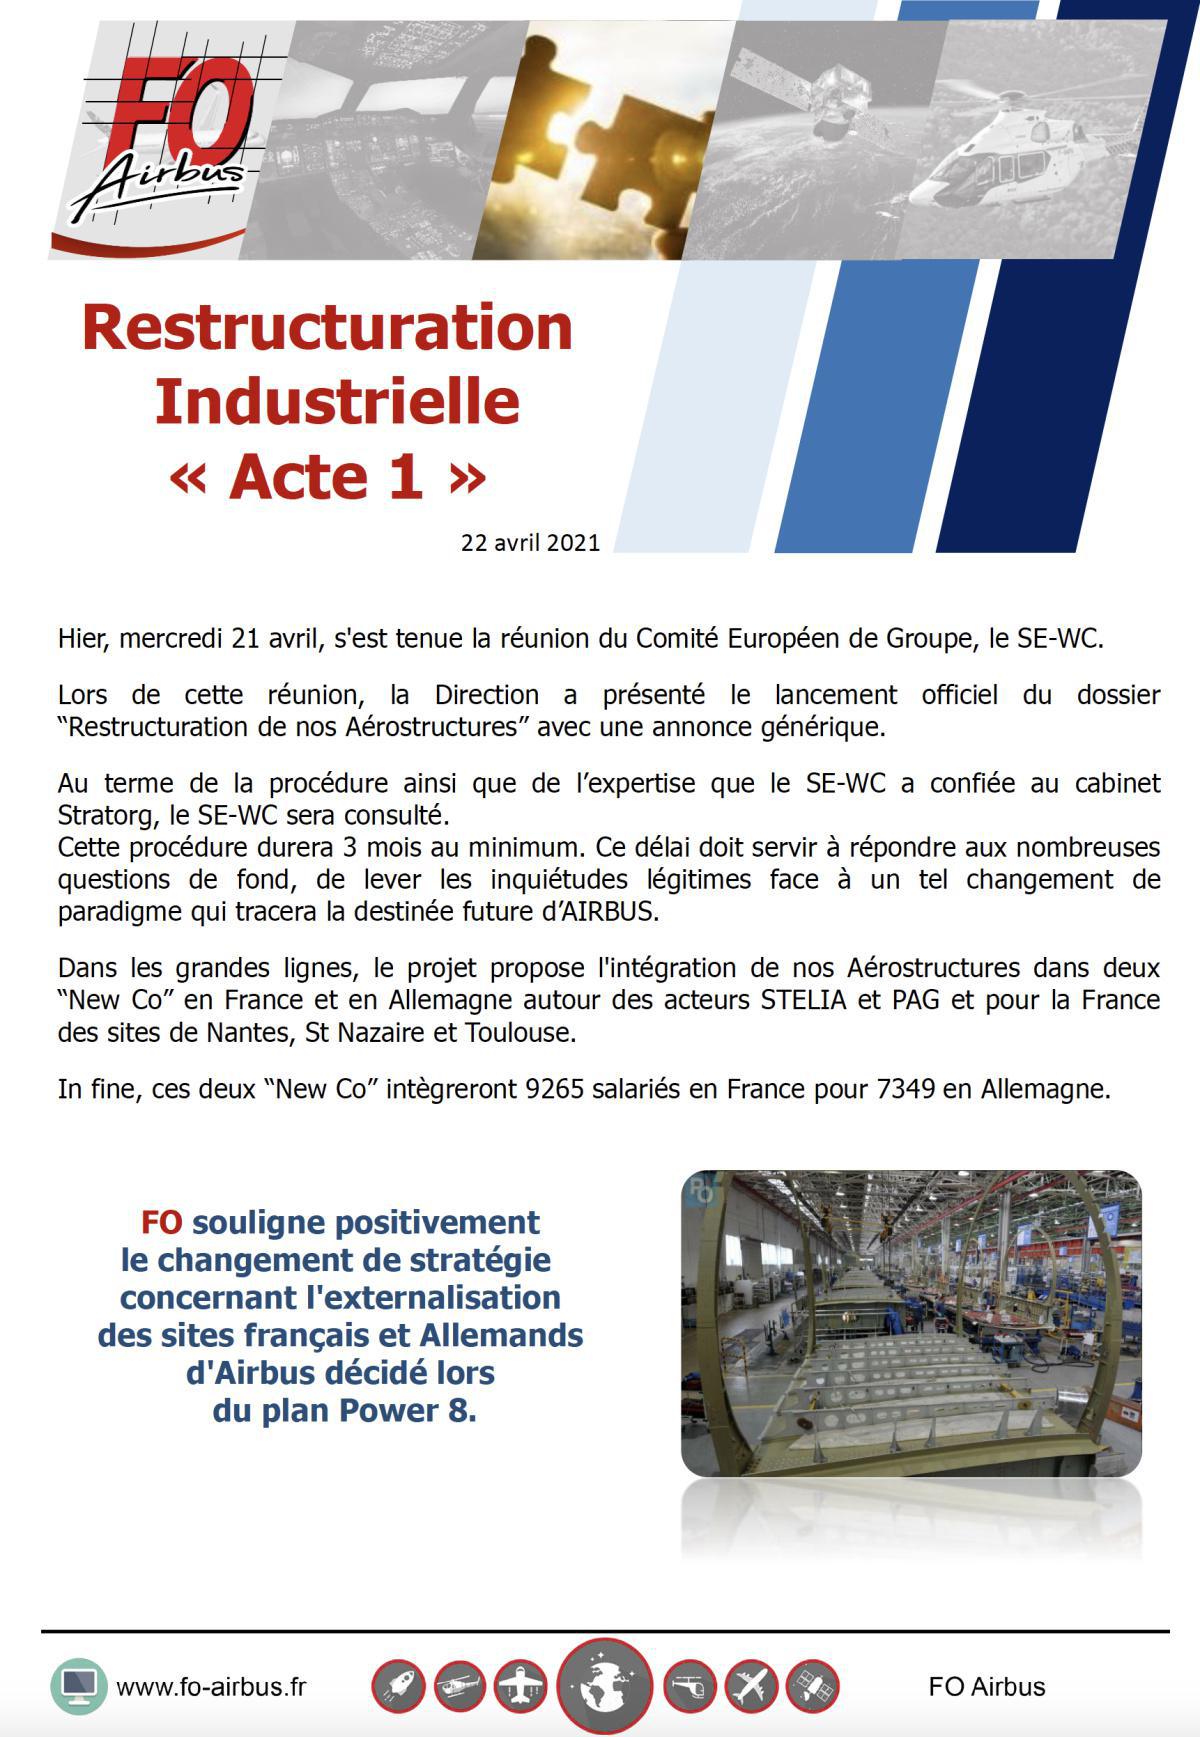 Restructuration Industrielle : Acte I